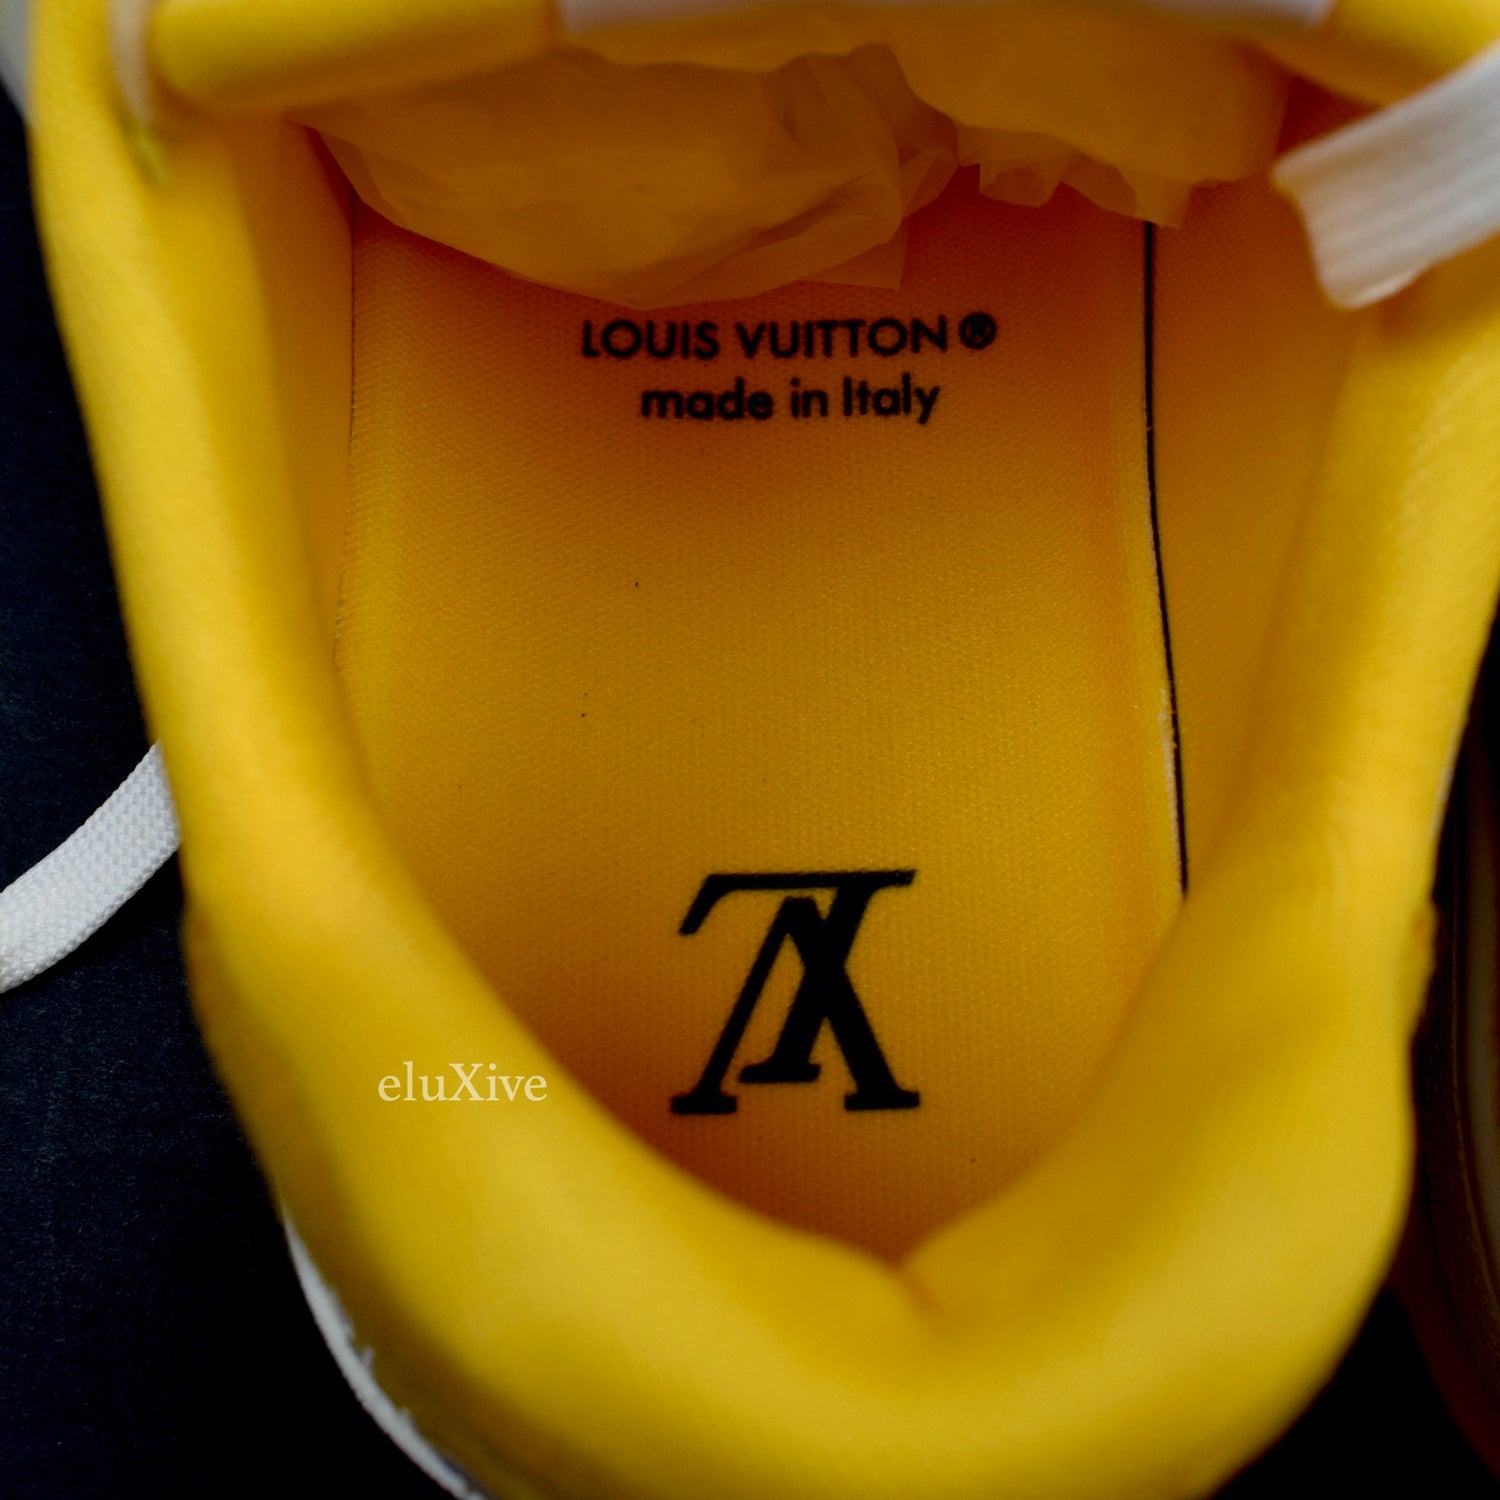 Louis Vuitton Trainer Sneaker Yellow & White - proalpaandomega -  proalpaandomega